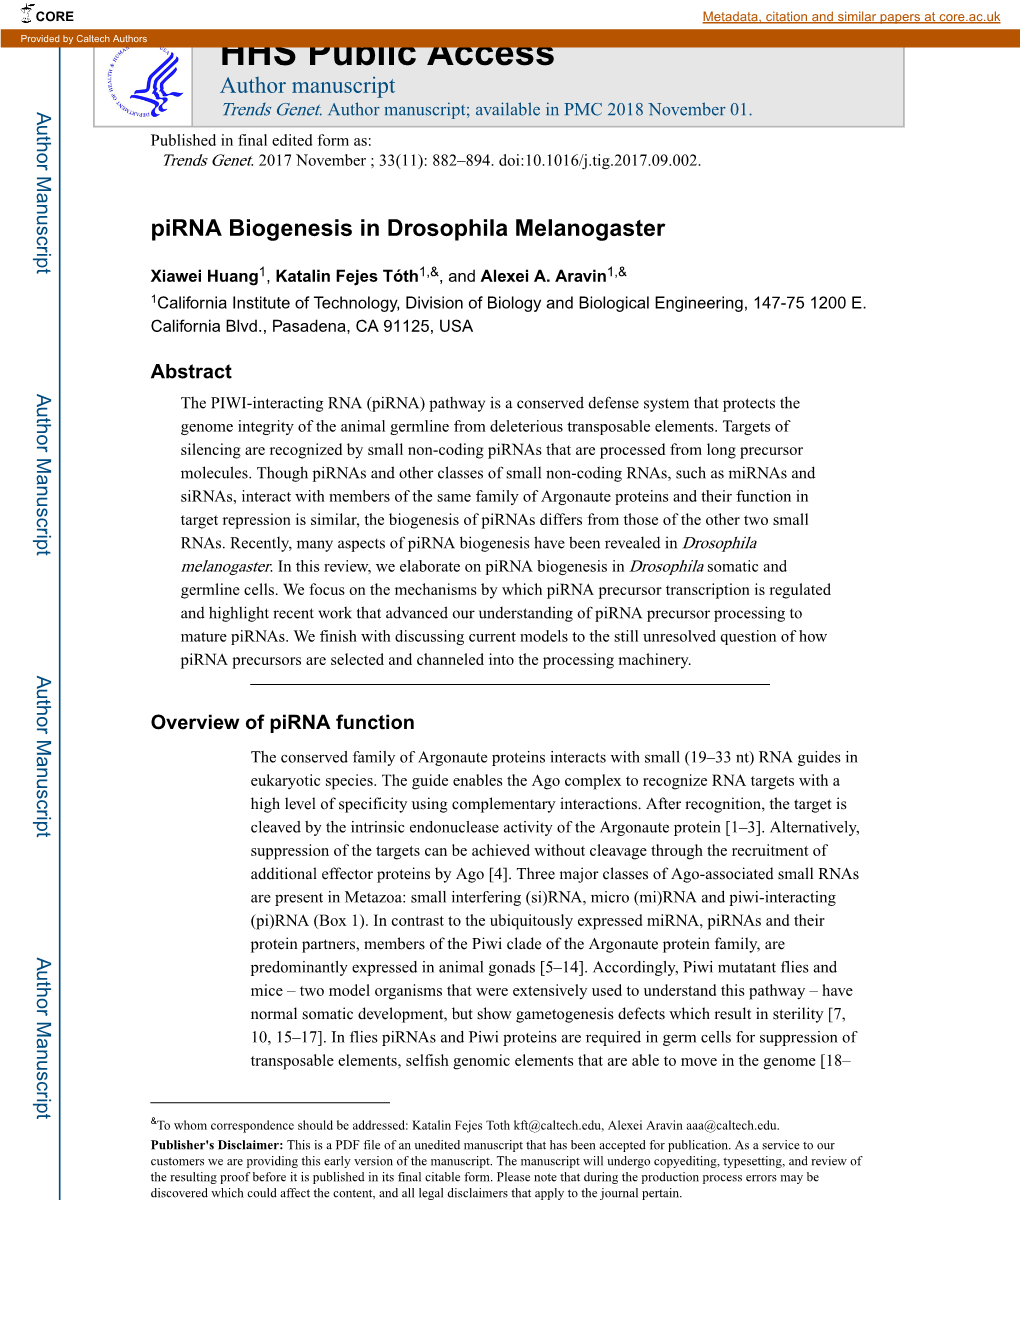 Pirna Biogenesis in Drosophila Melanogaster